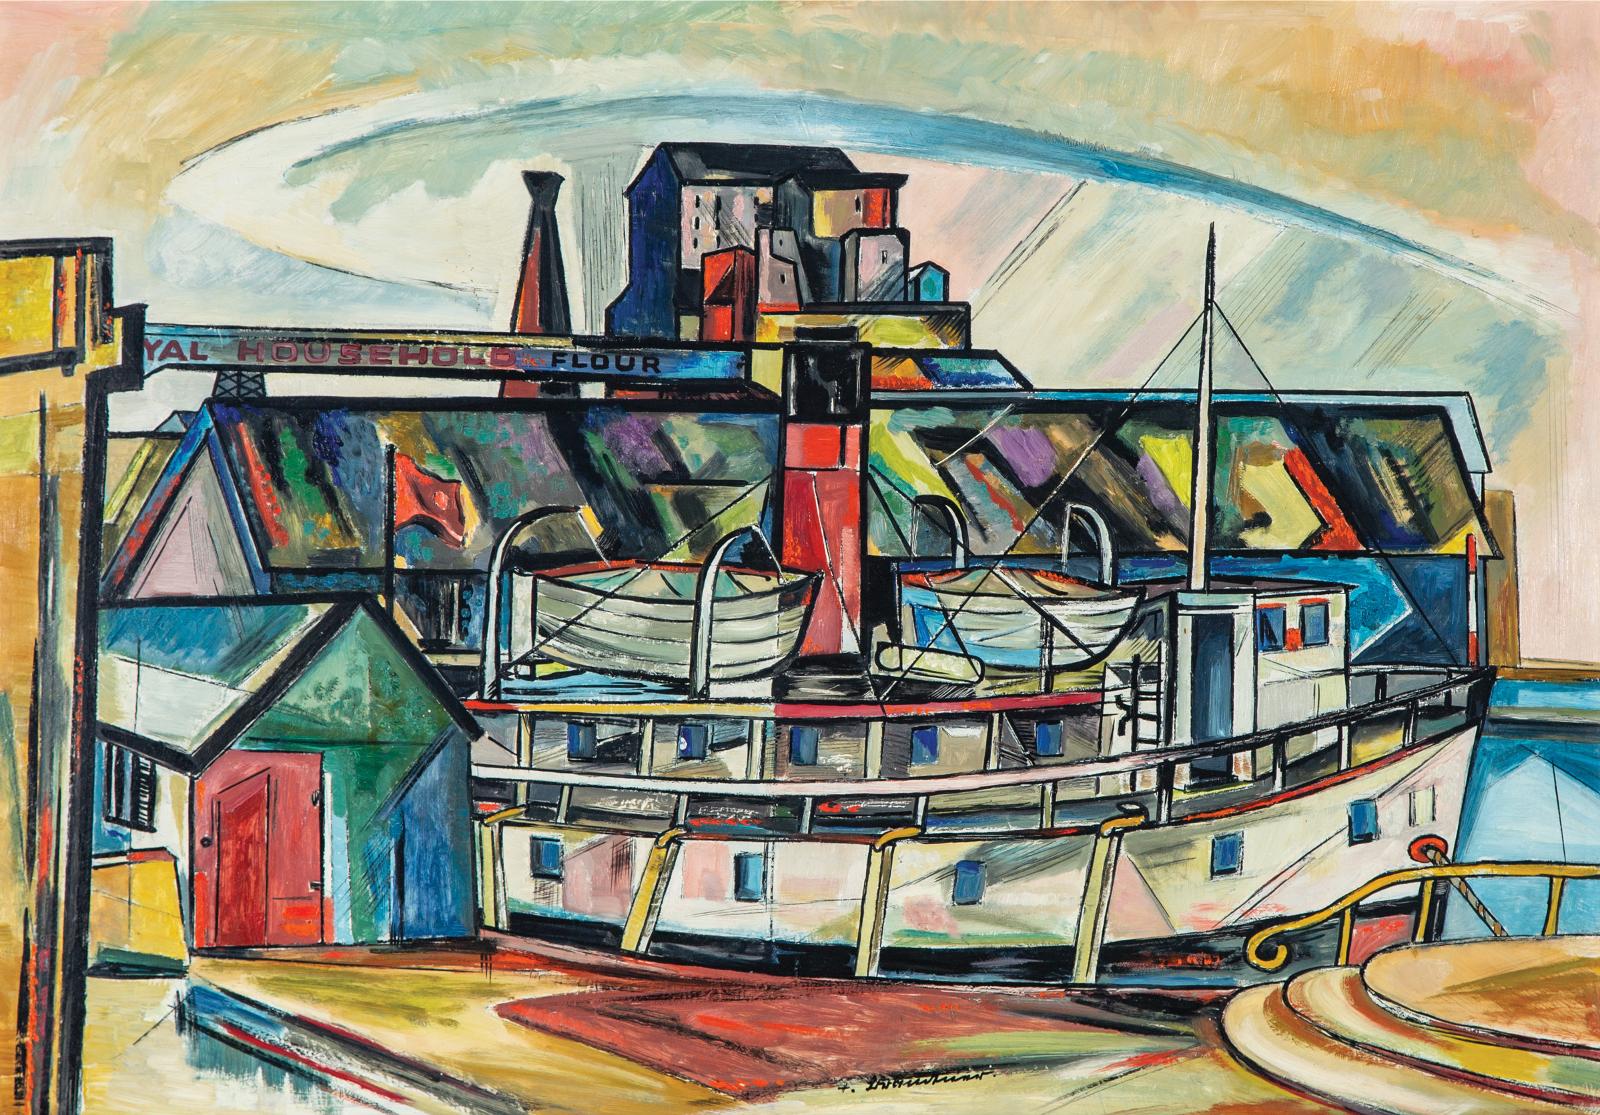 Fritz Brandtner (1896-1969) - Port Of Montreal (Royal Household Flour, Montreal)